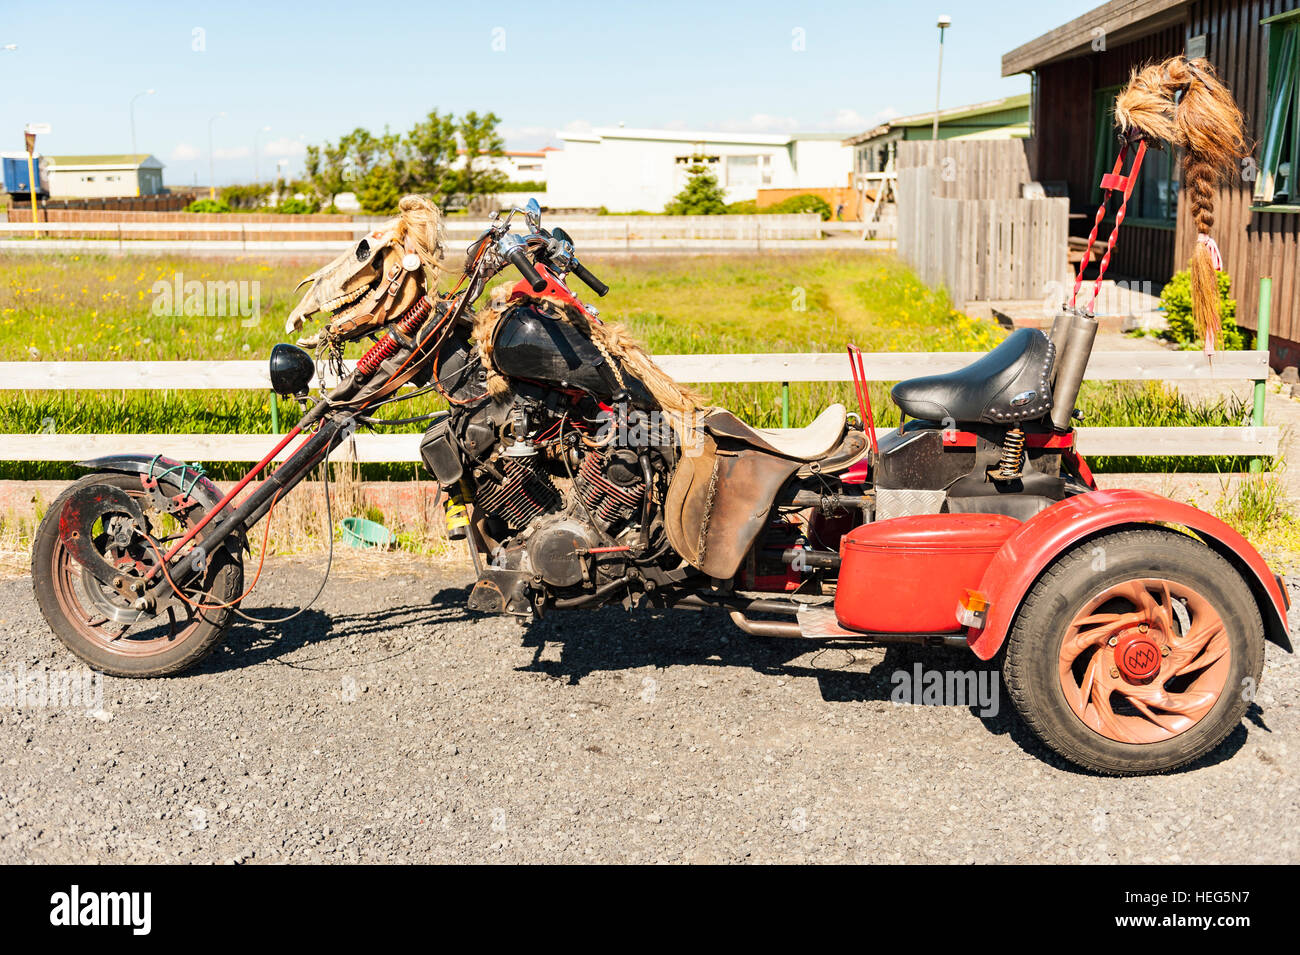 Eine maßgeschneiderte dreirädrigen Motorrad / Chopper geschmückt mit einem Pferd Totenkopf und Perücken. Stockfoto